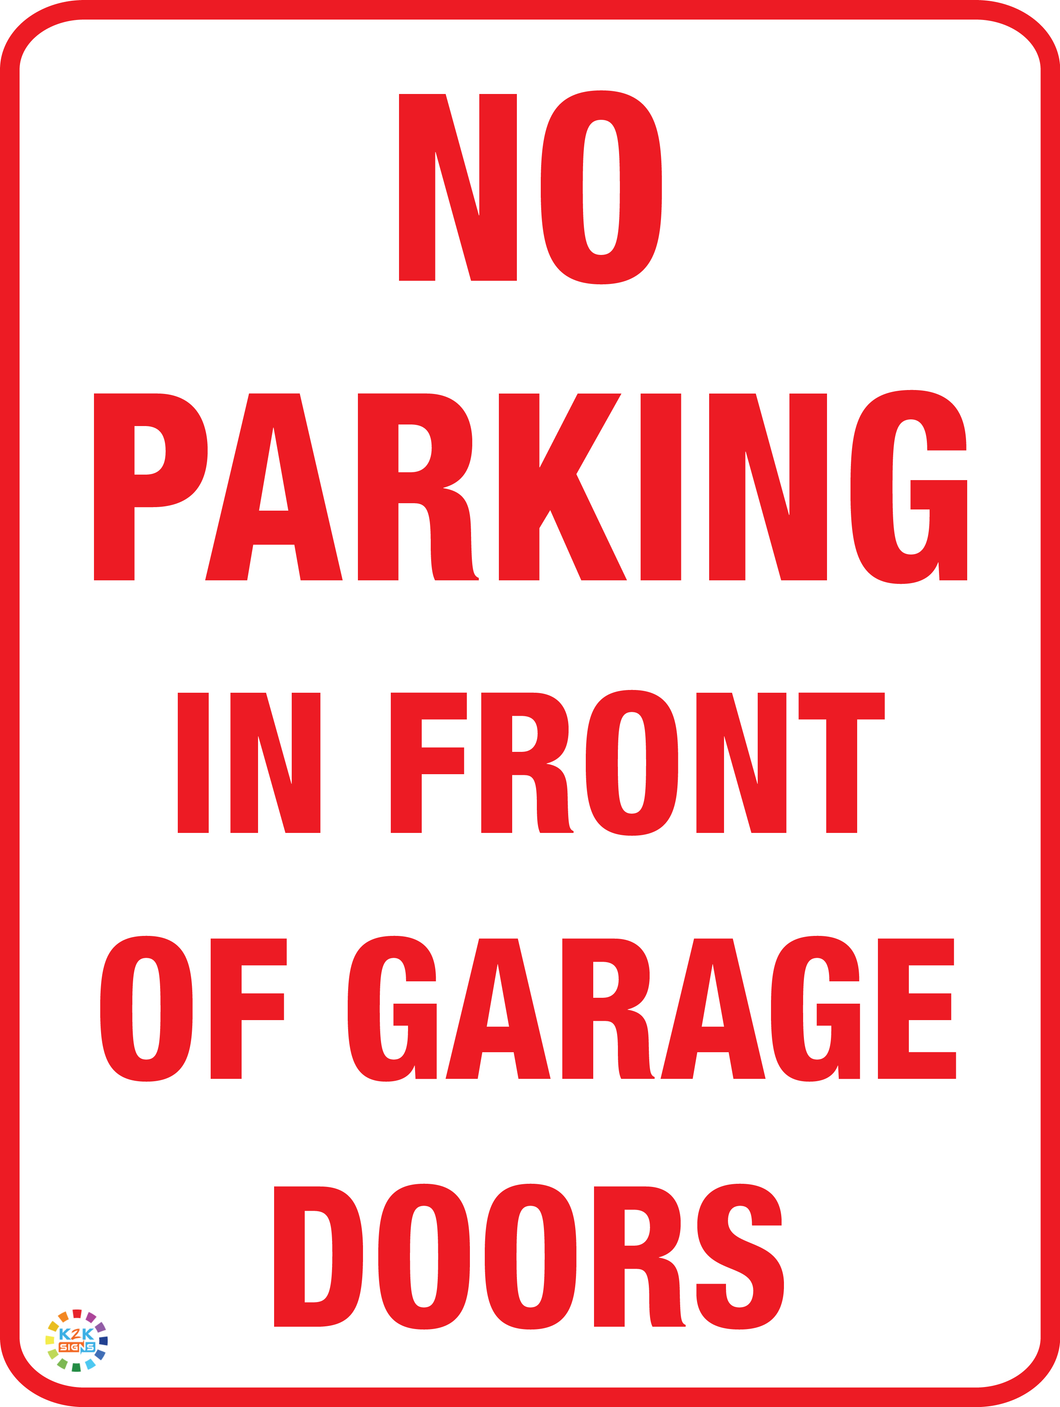 NO PARKING IN FRONT OF GARAGE DOORS K2K Signs